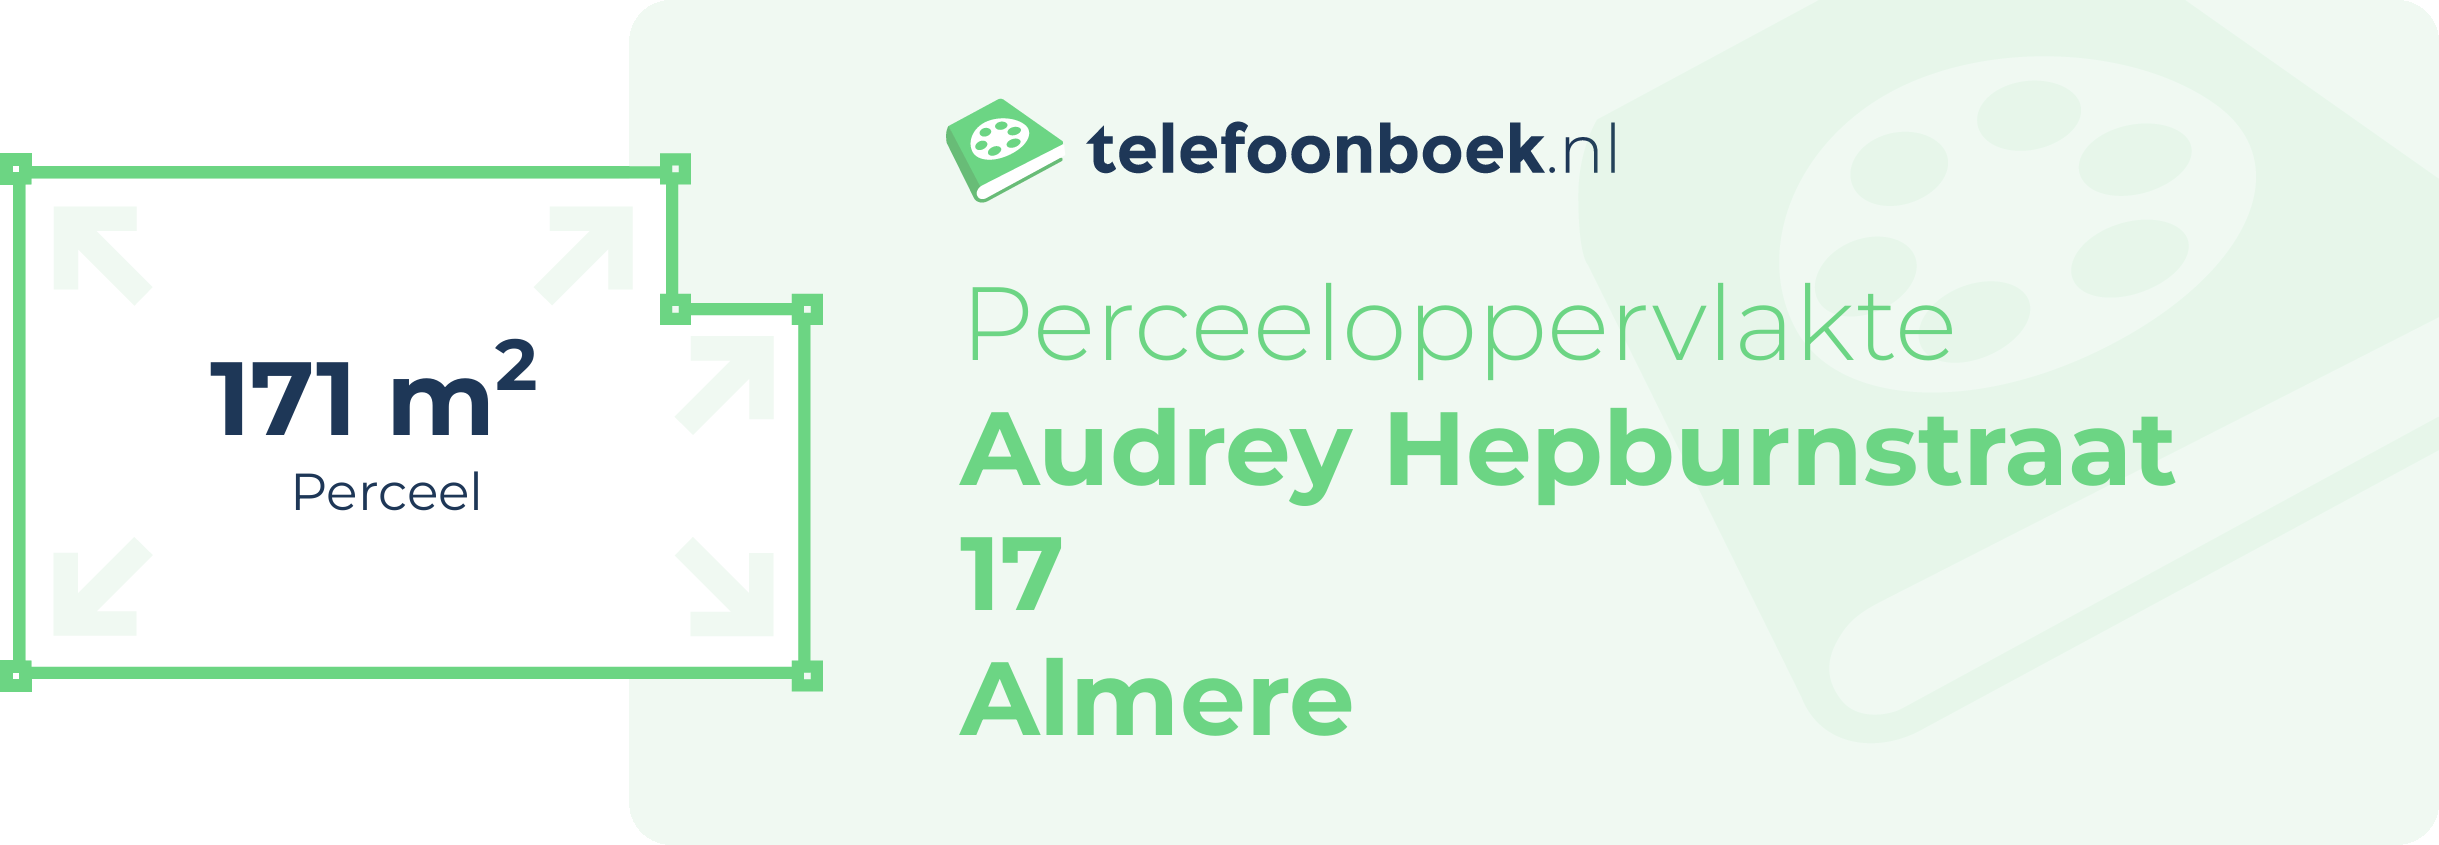 Perceeloppervlakte Audrey Hepburnstraat 17 Almere